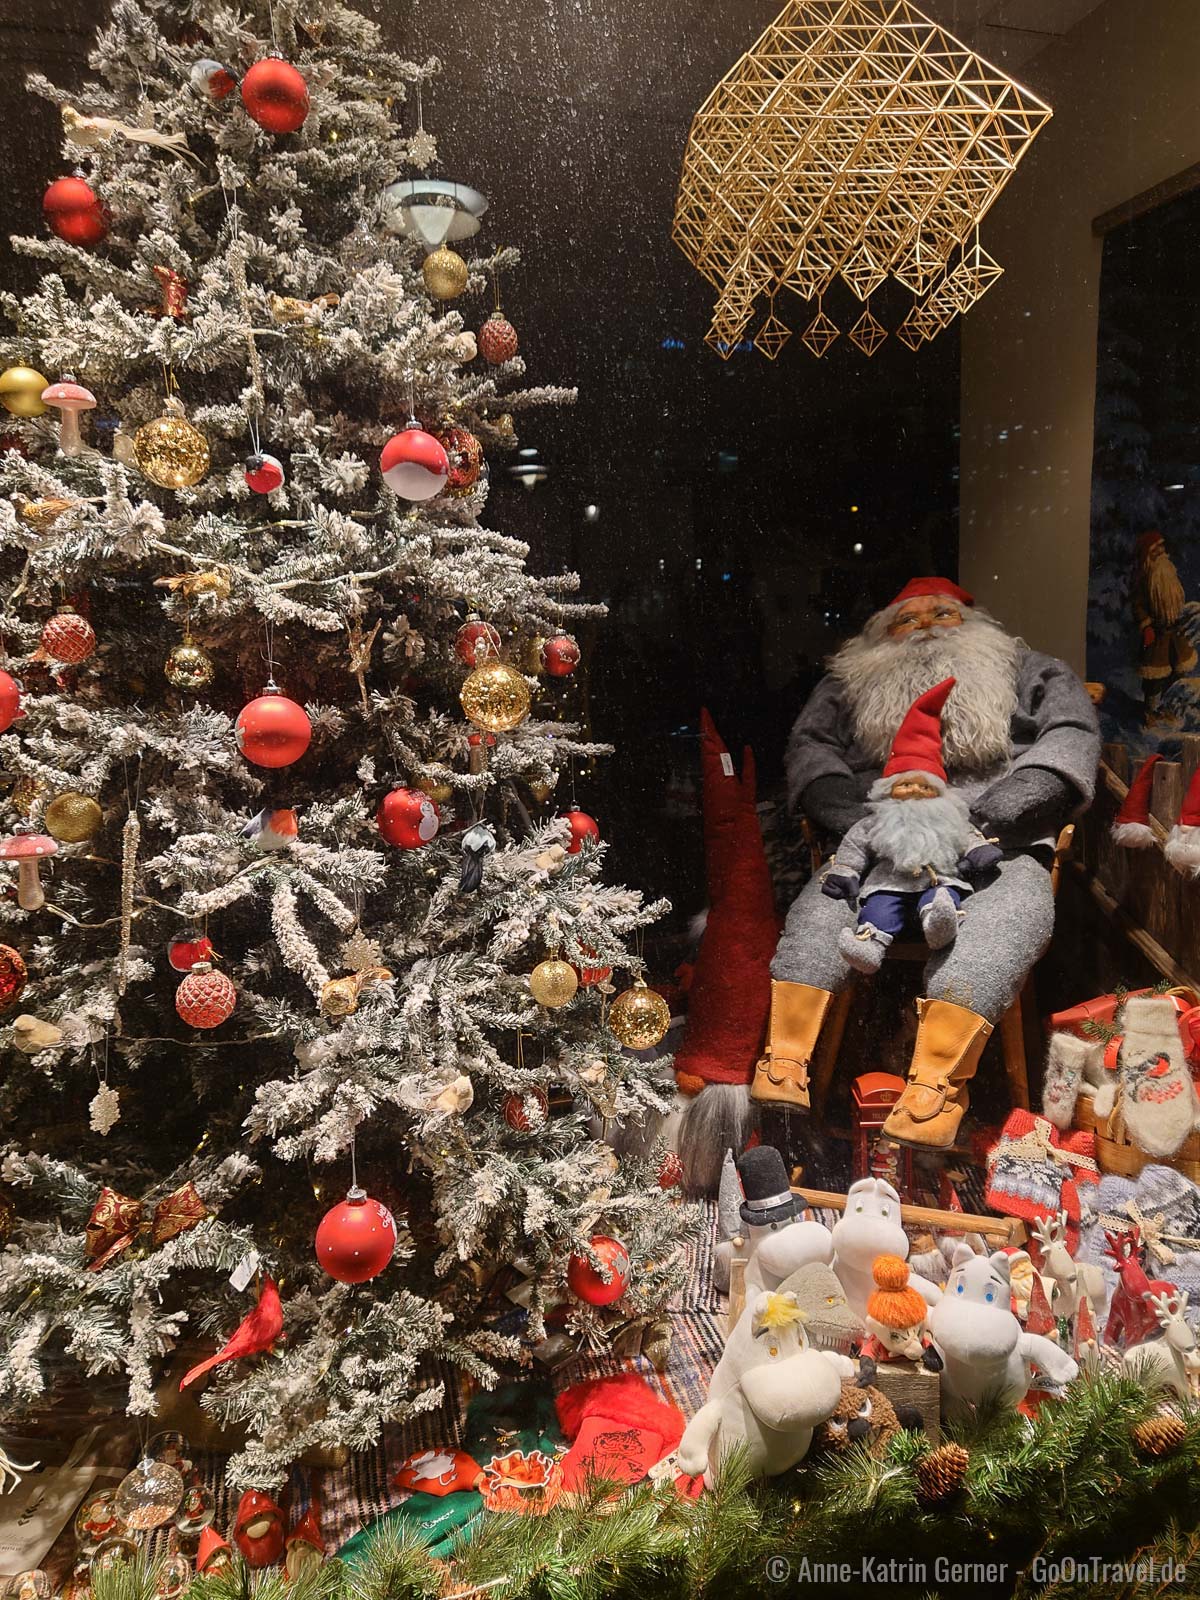 Der Schaufensterbummel macht in der Weihnachtszeit in Helsinki besonders viel Freude